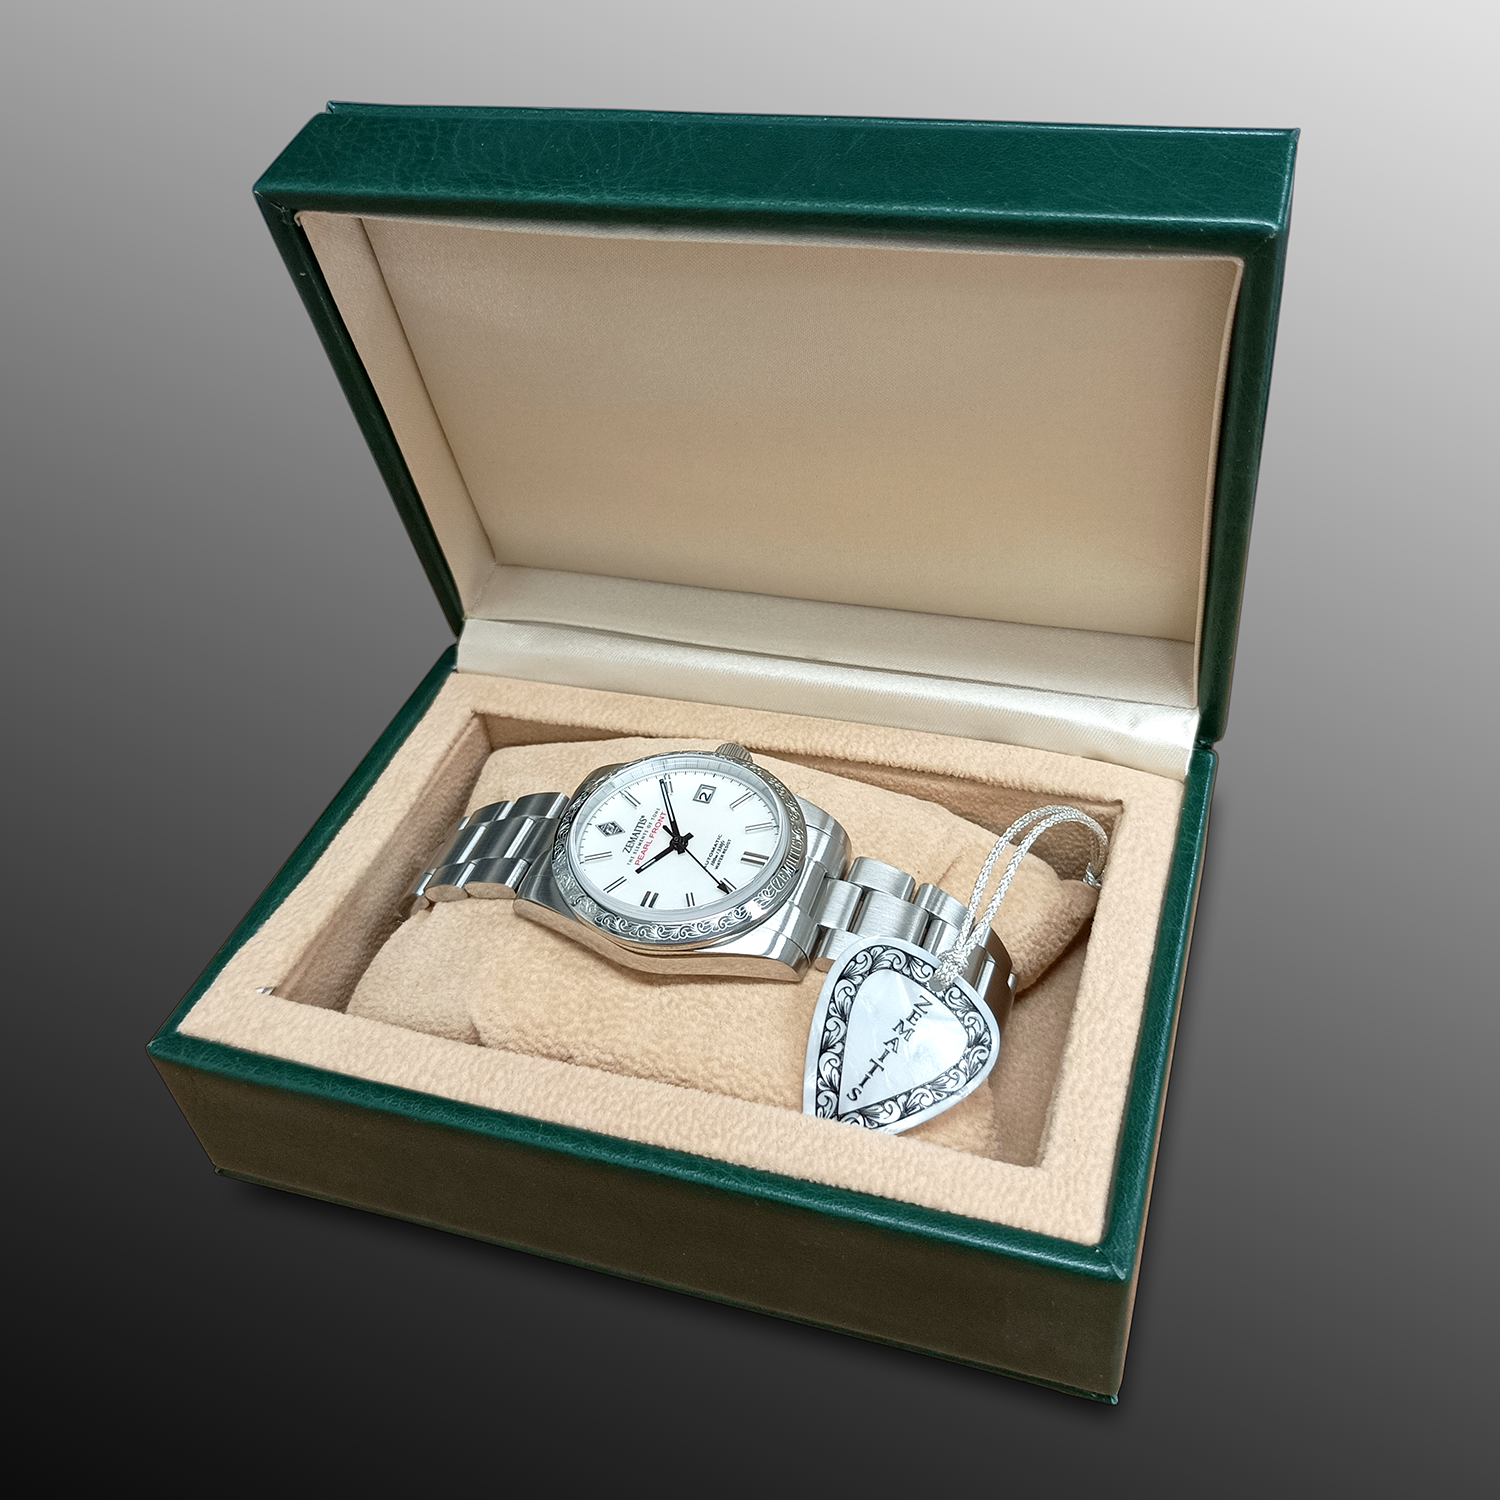 ゼマイティス新品　ZEMAITIS　ZWPF235　パールフロント　腕時計　限定100本